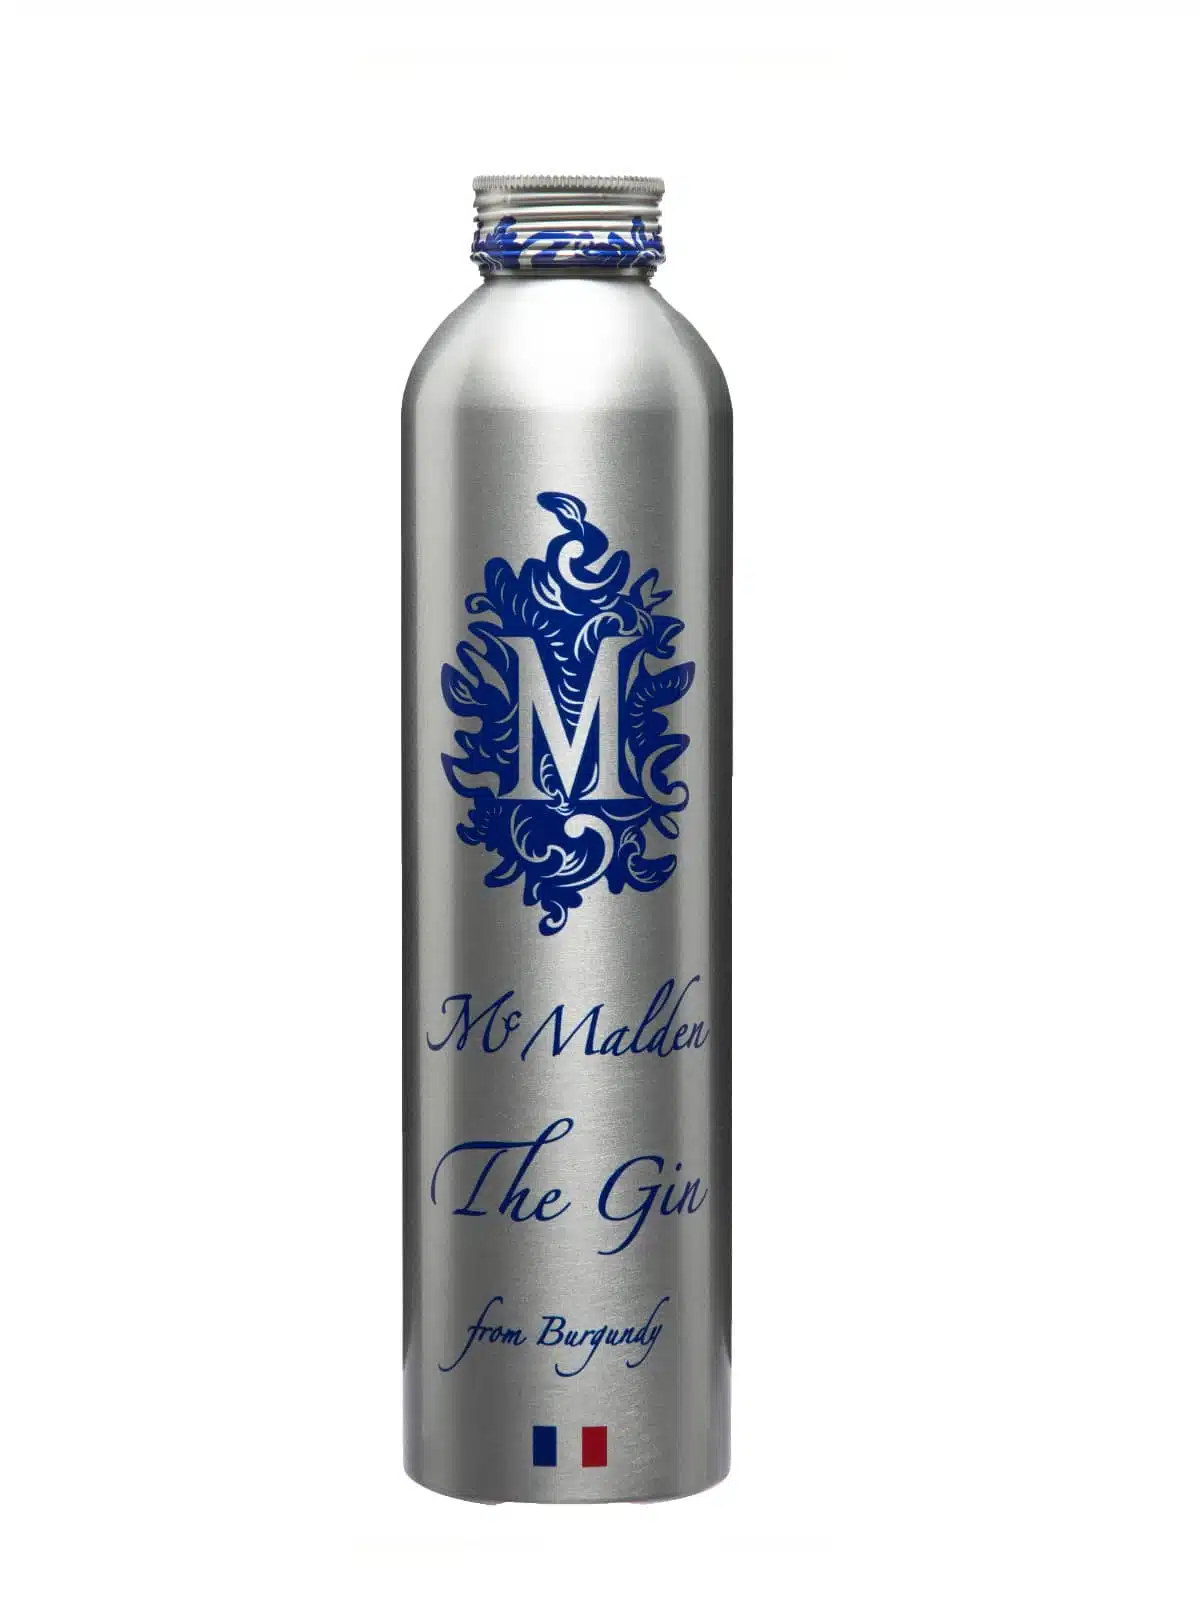 Mac Malden the gin